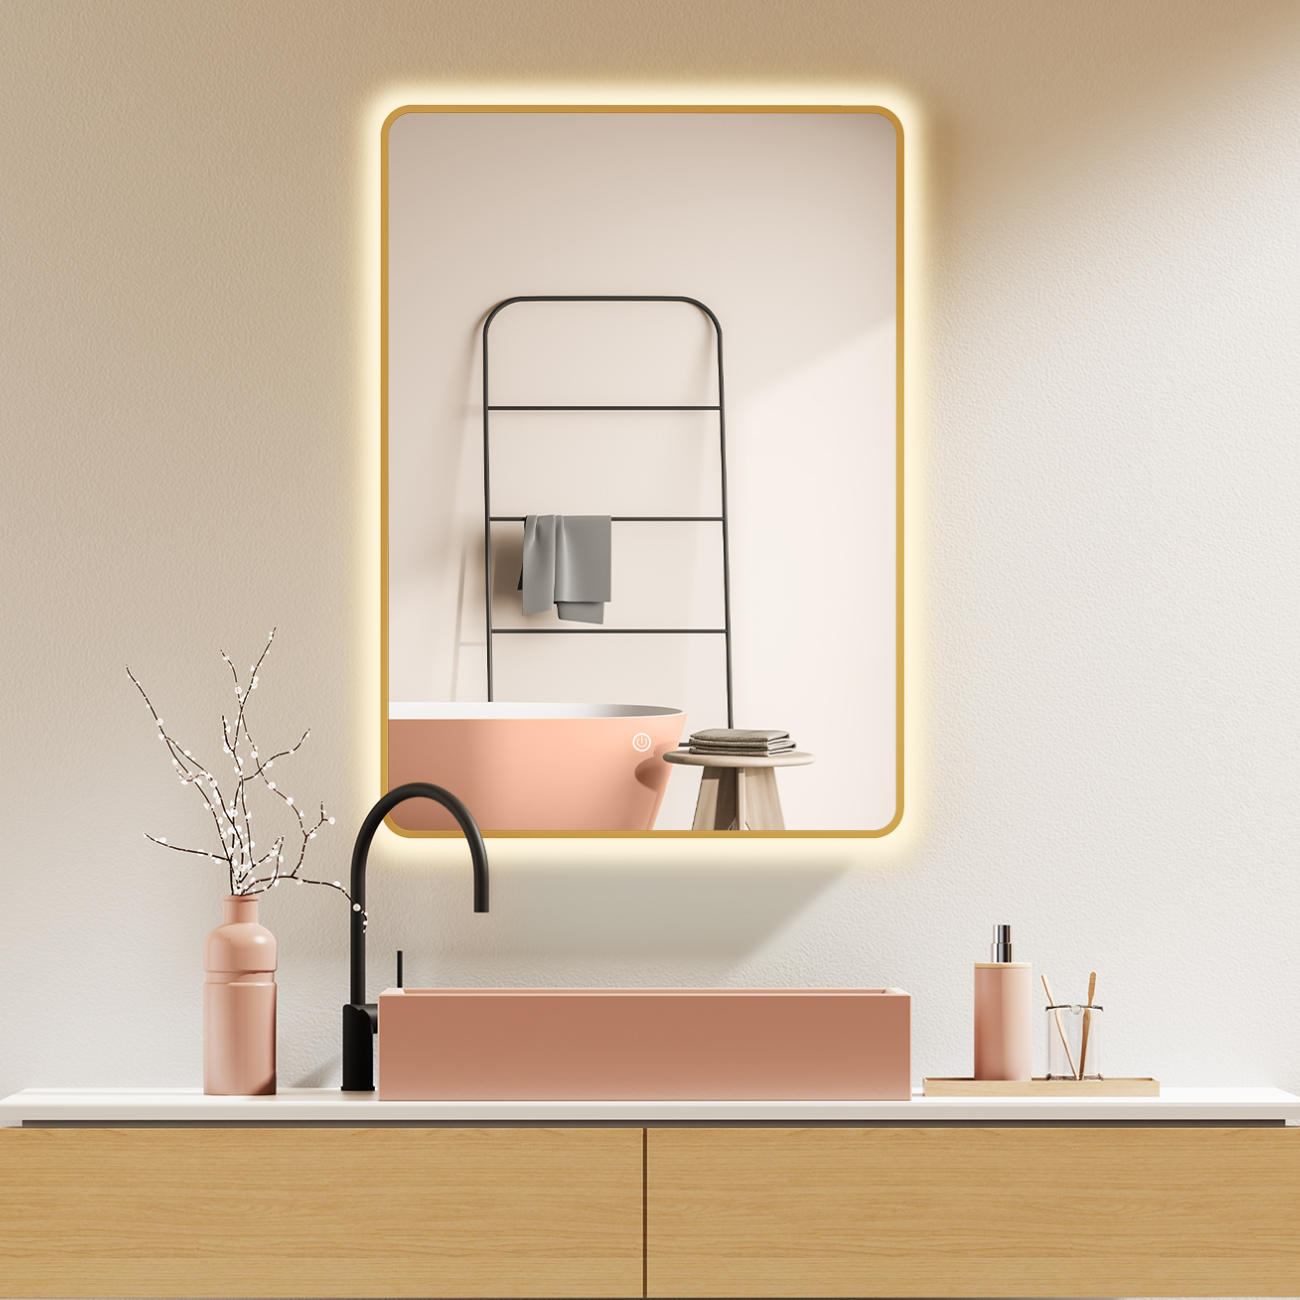 LED Badspiegel, Spiegel mit Beleuchtung, Gold Metall Rahmen